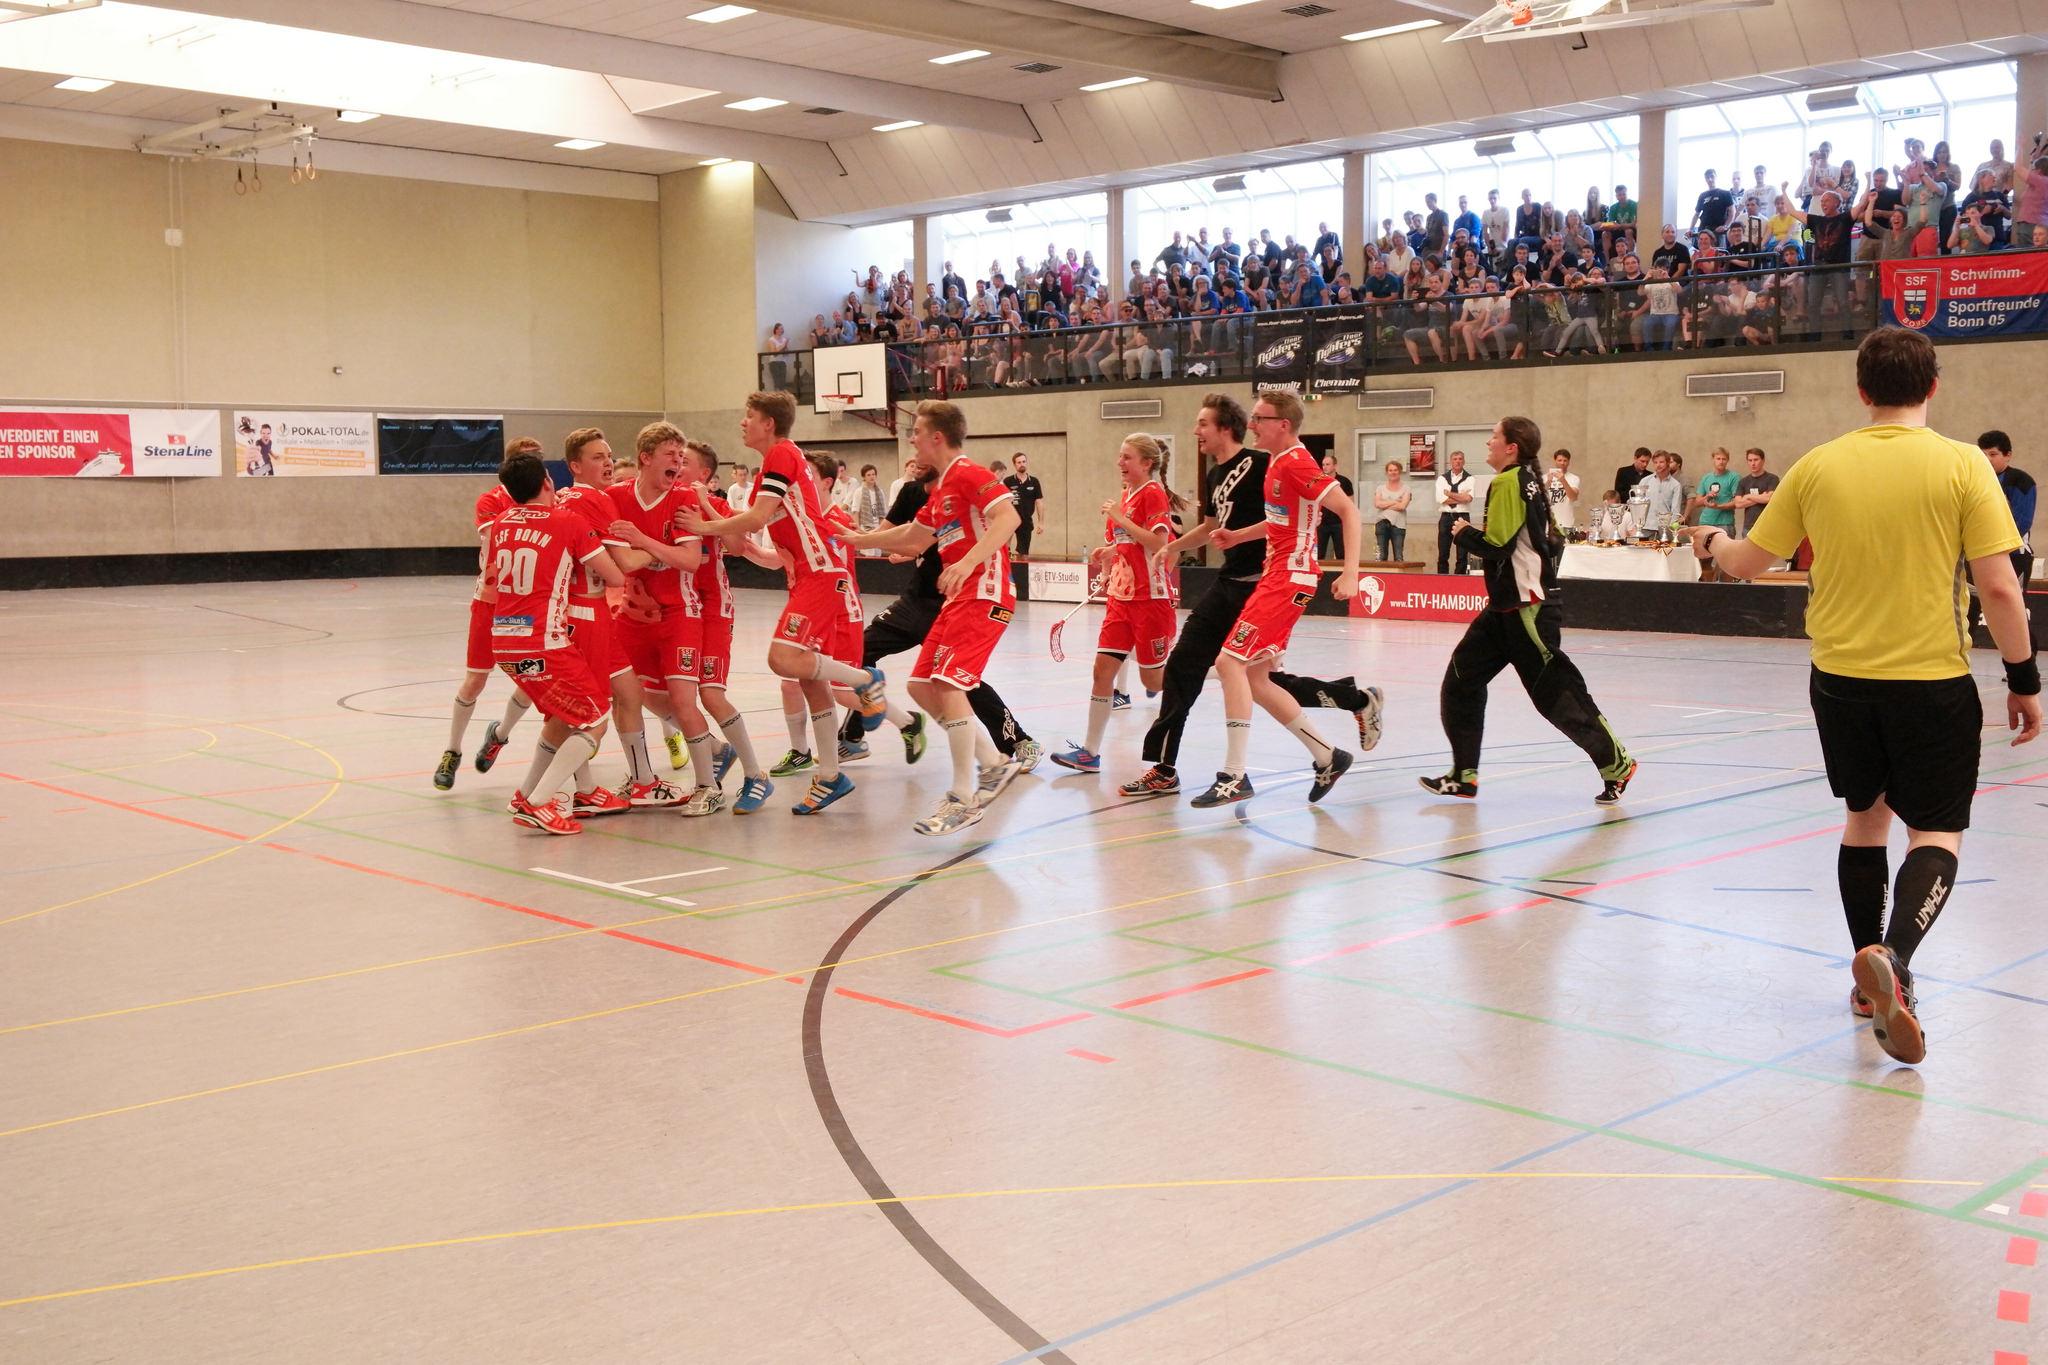 Der SSF Bonn feierte die U17 Meisterschaft in Hamburg. Dort waren 320 Fans beim Finale vor Ort. (Quelle: ETV Hamburg, hik met/flickr)